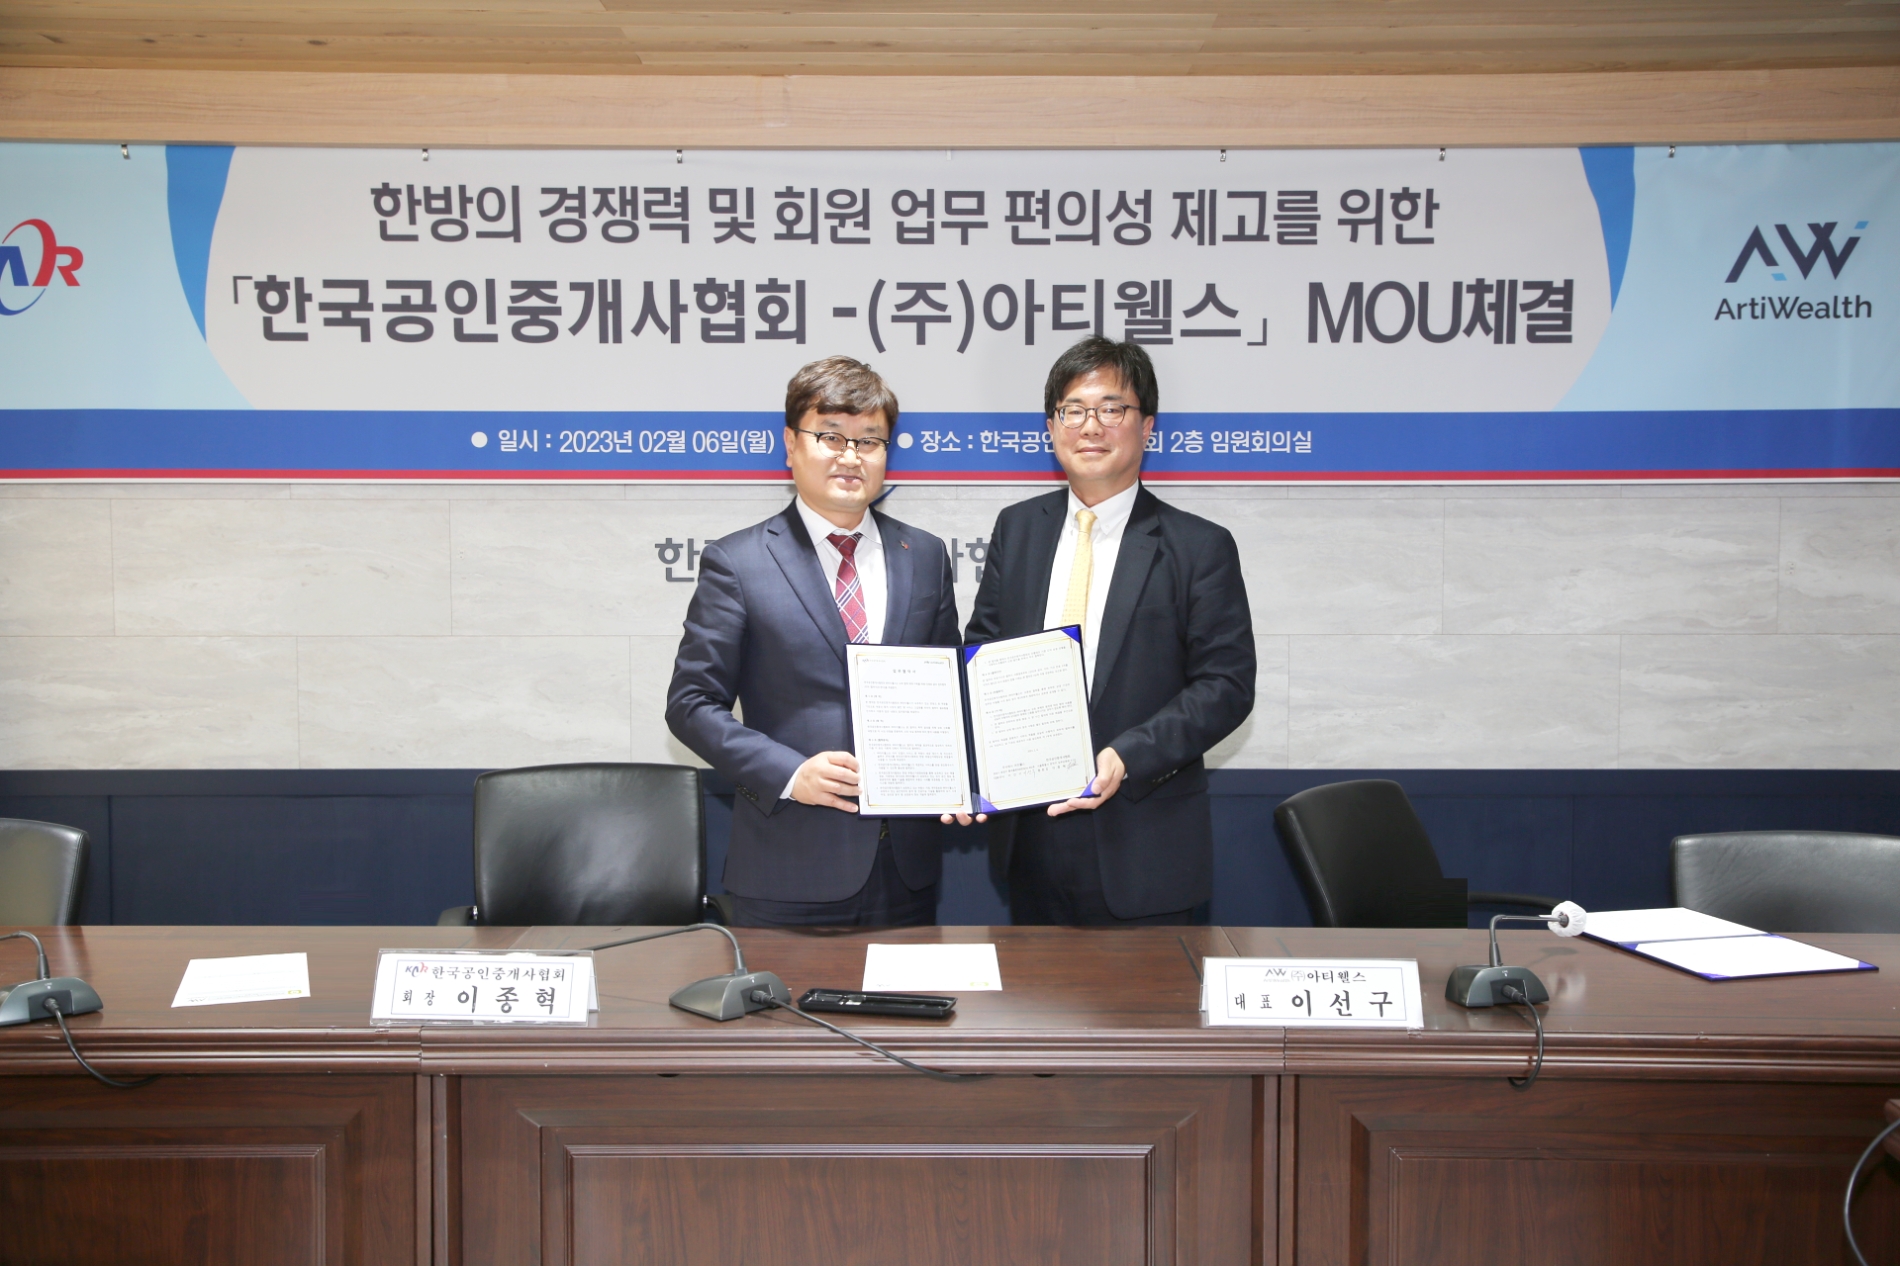 왼쪽부터 한국공인중개사협회 이종혁 회장, 오른쪽 : 아티웰스 이선구 대표 / 사진제공=아티웰스